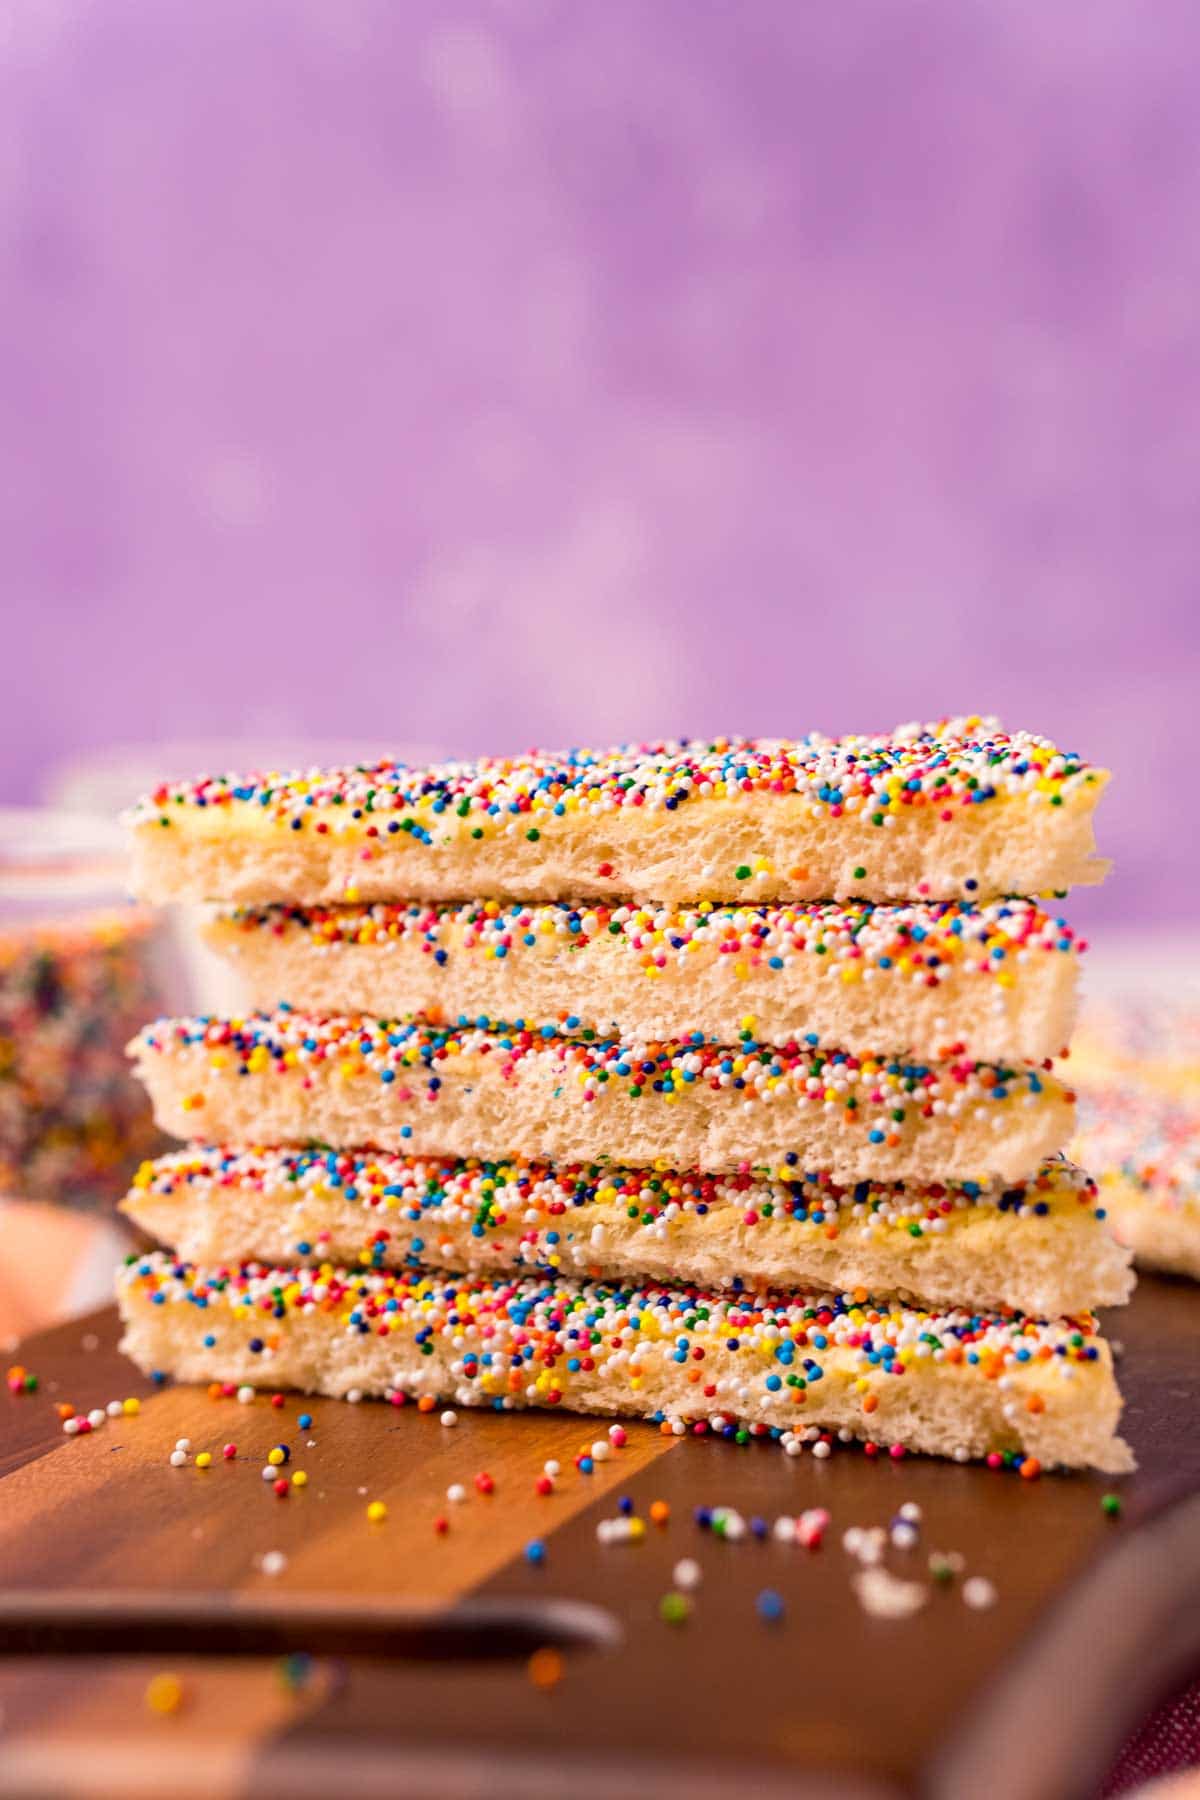 Lolly Bag Happy Birthday Wax Melt Snap Bars Cake Fairy Bread Lamington